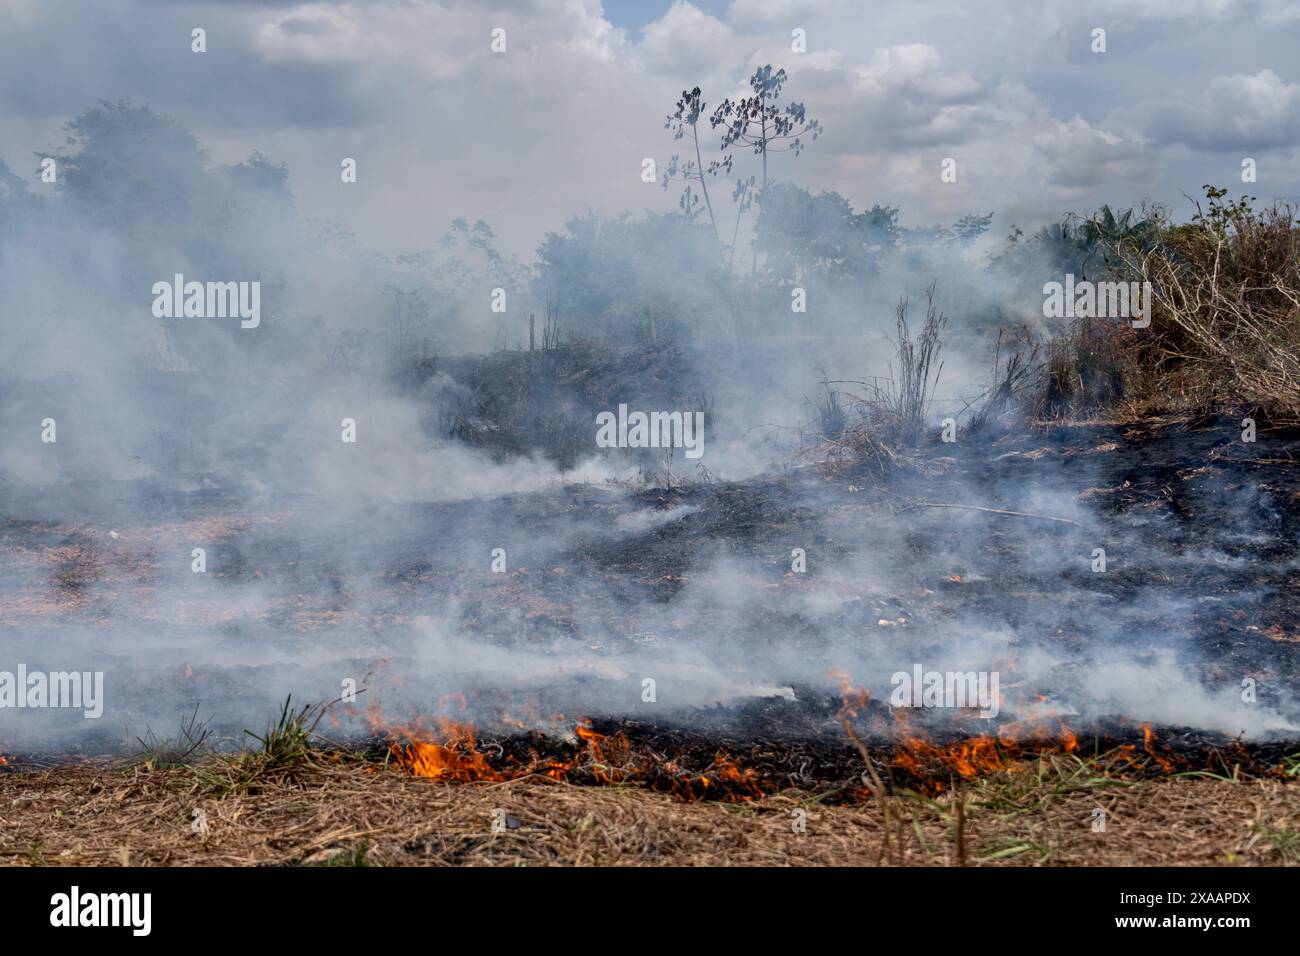 Déforestation par feu illégal dans la forêt amazonienne pour ouvrir des terres à l'agriculture. Vue aérienne des arbres forestiers. Concept de co2, environnement, écologie Banque D'Images